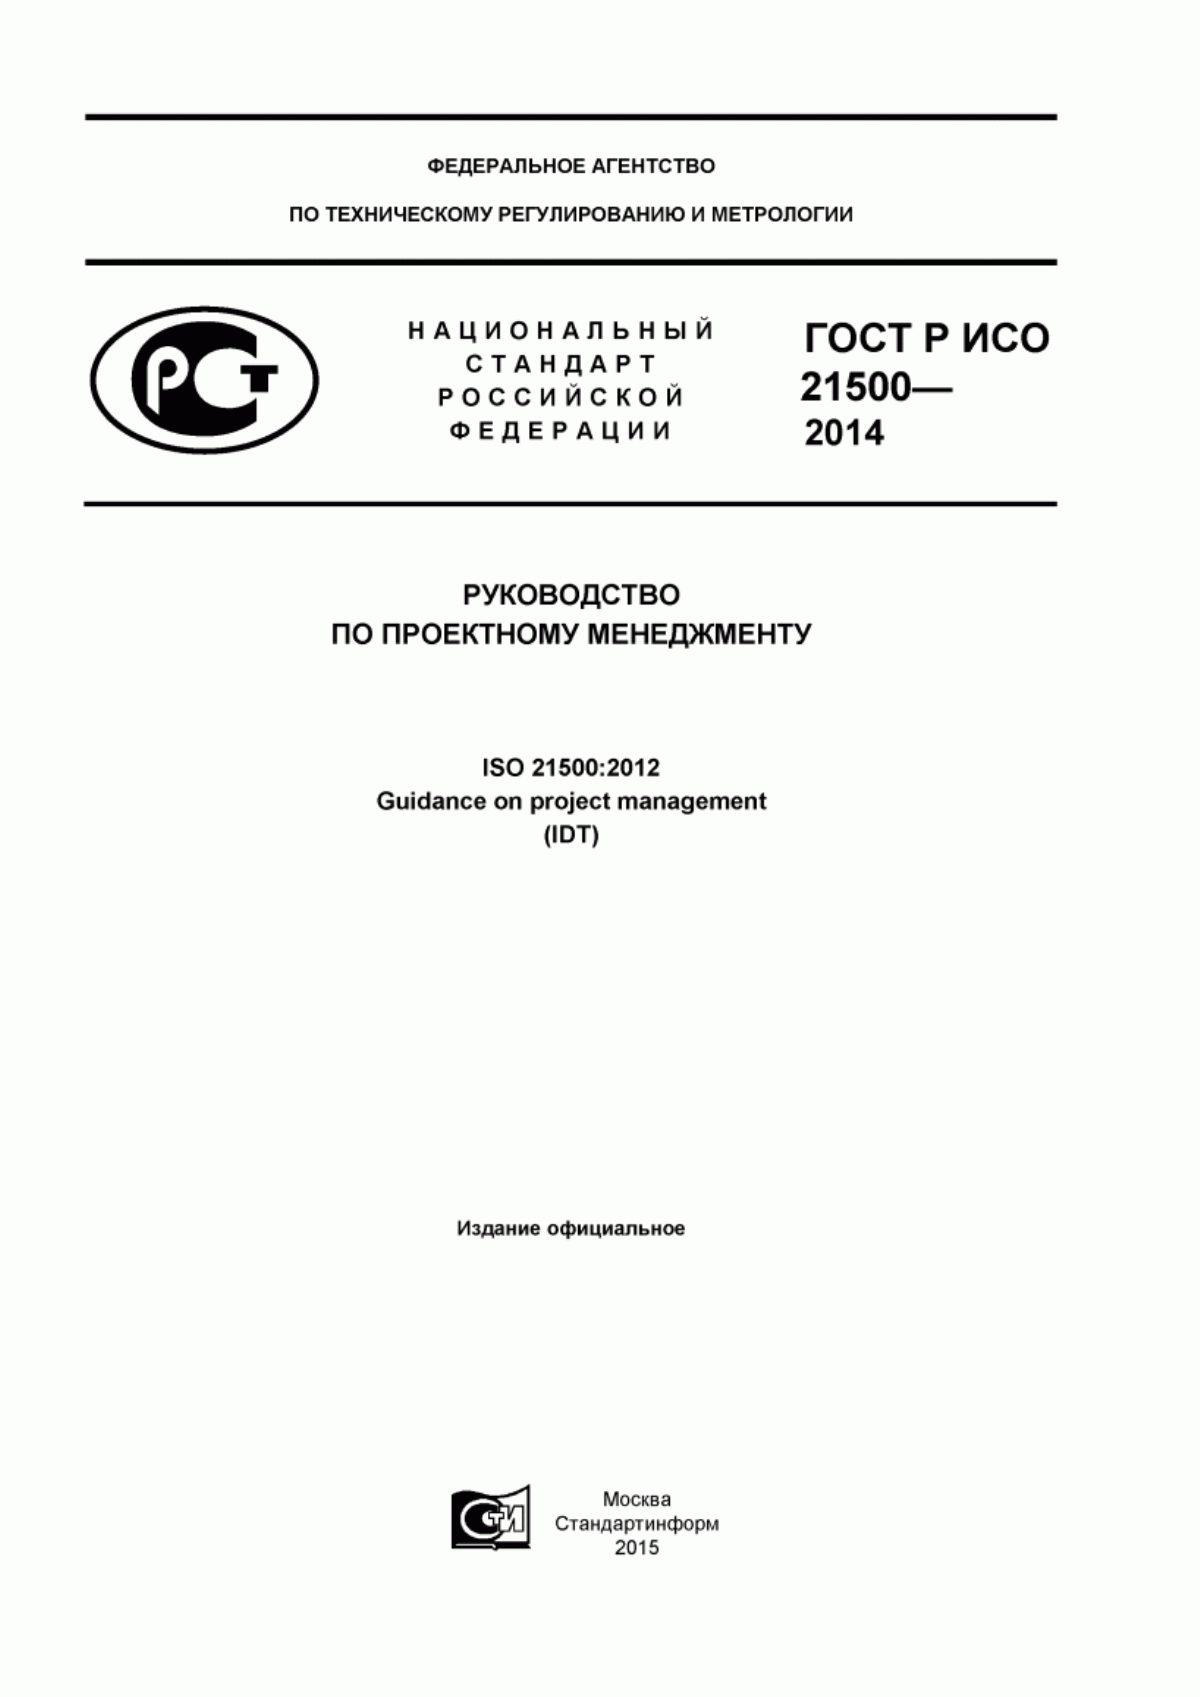 ГОСТ Р ИСО 21500-2014 Руководство по проектному менеджменту